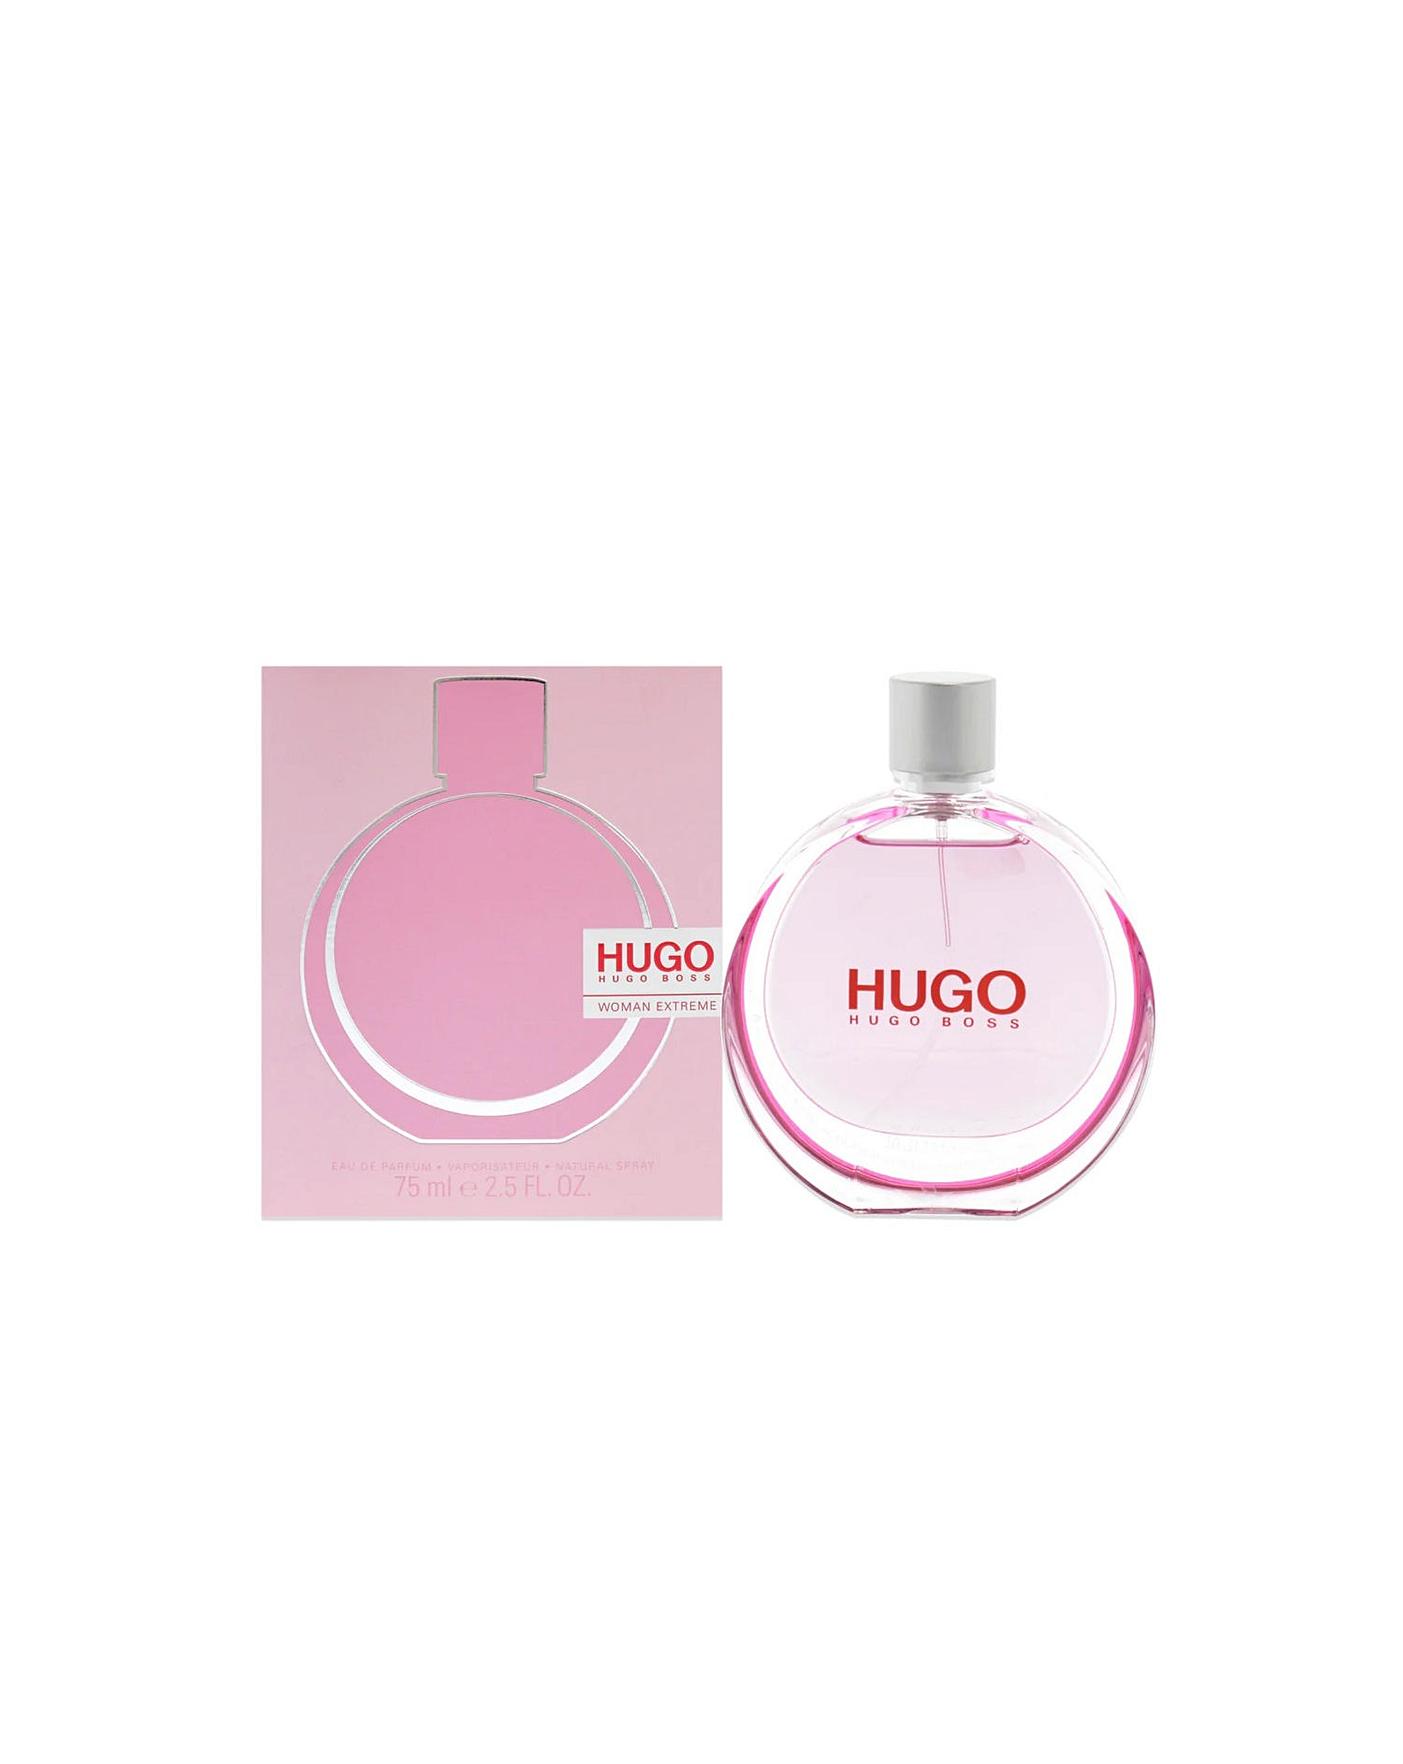 Hugo Woman Extreme Eau De Parfum 75ml Spray - Hugo Boss